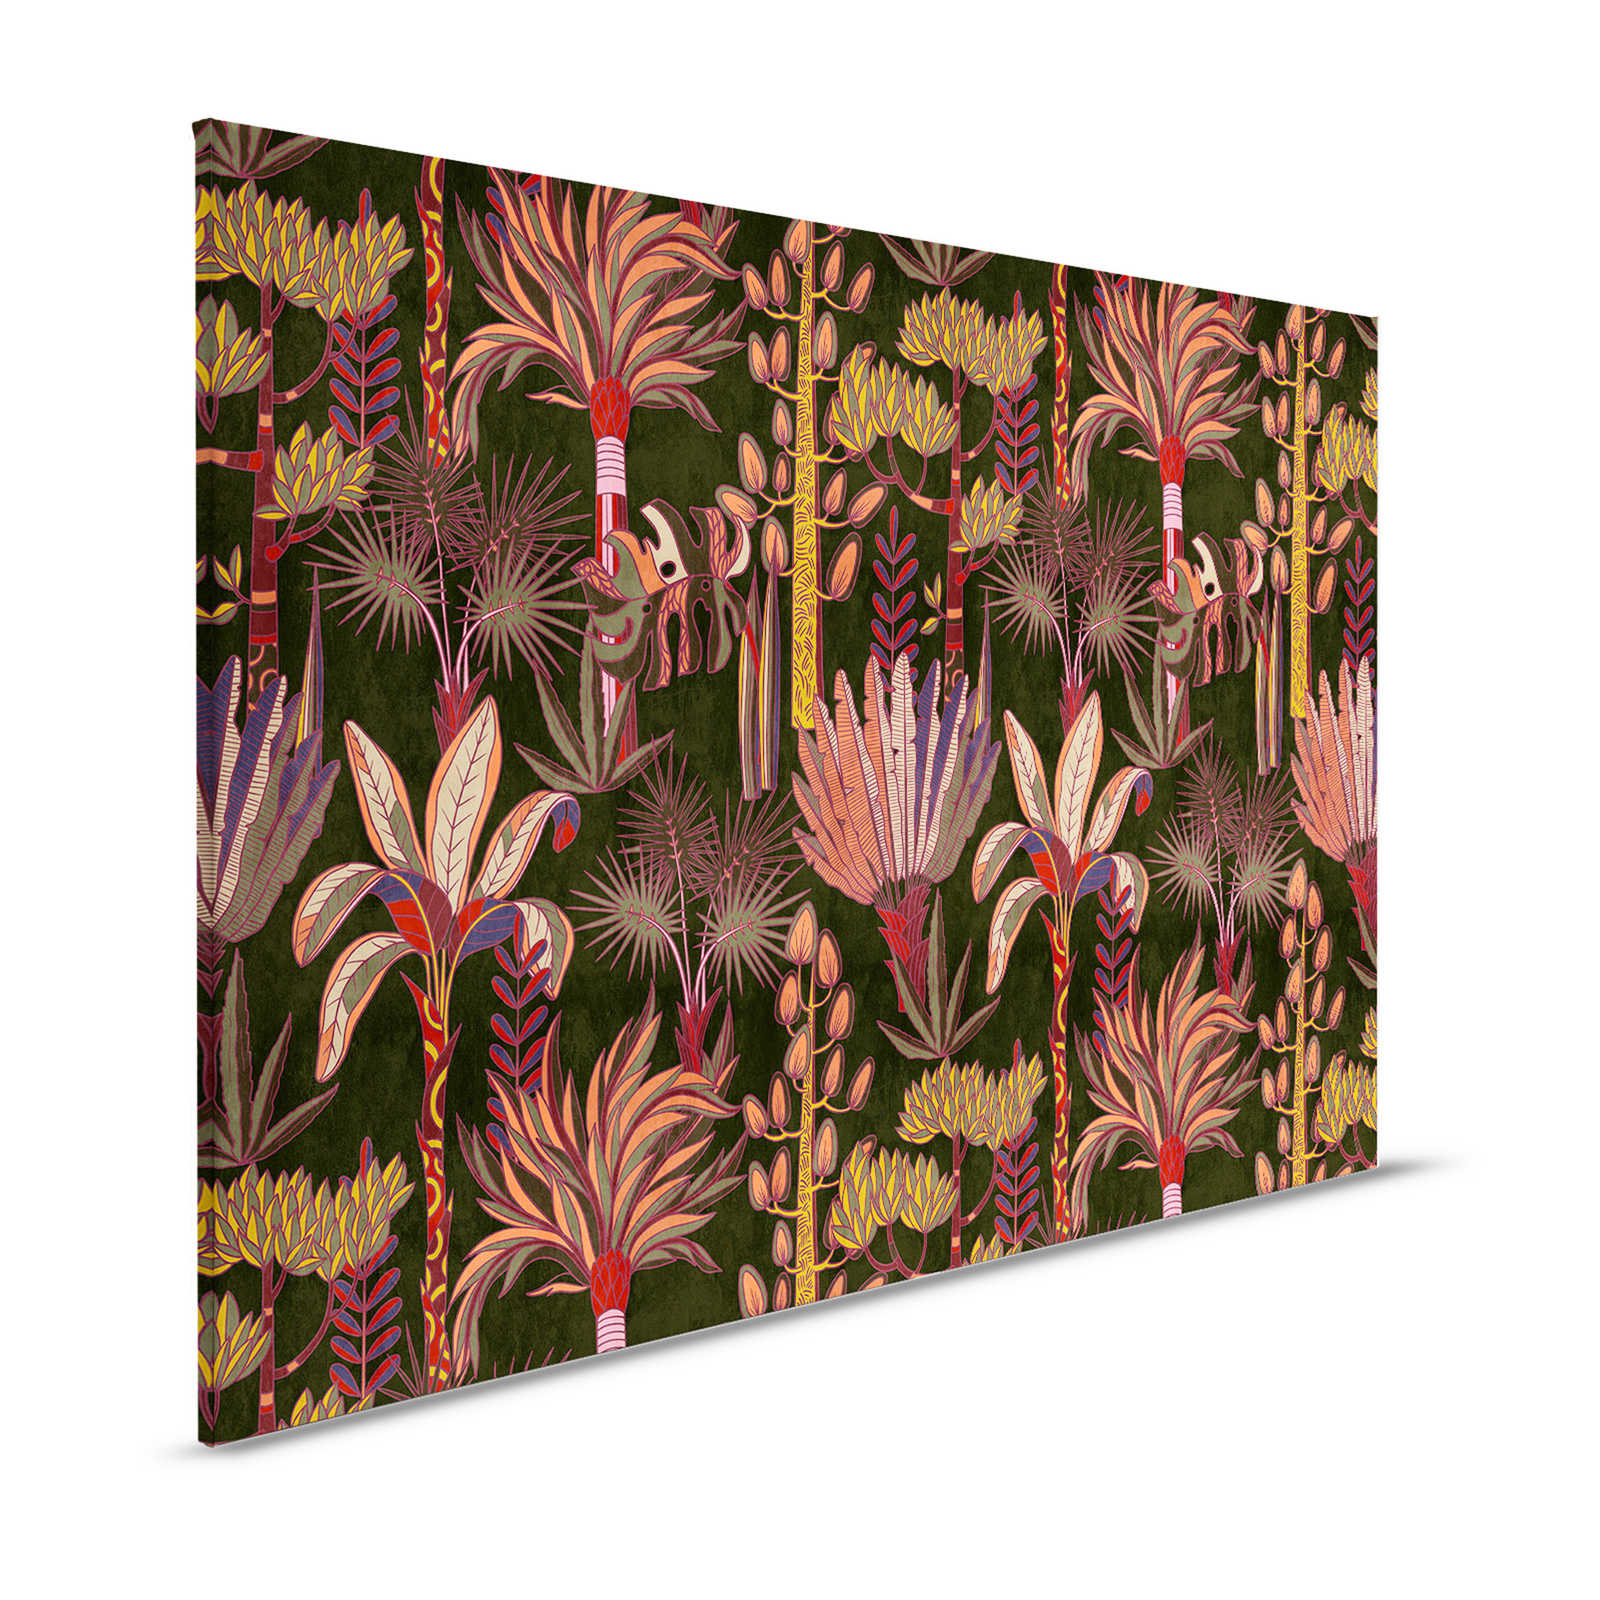 Lagos 1 - Cuadro lienzo palmeras estilo gráfico colorido en aspecto textil - 1,20 m x 0,80 m
